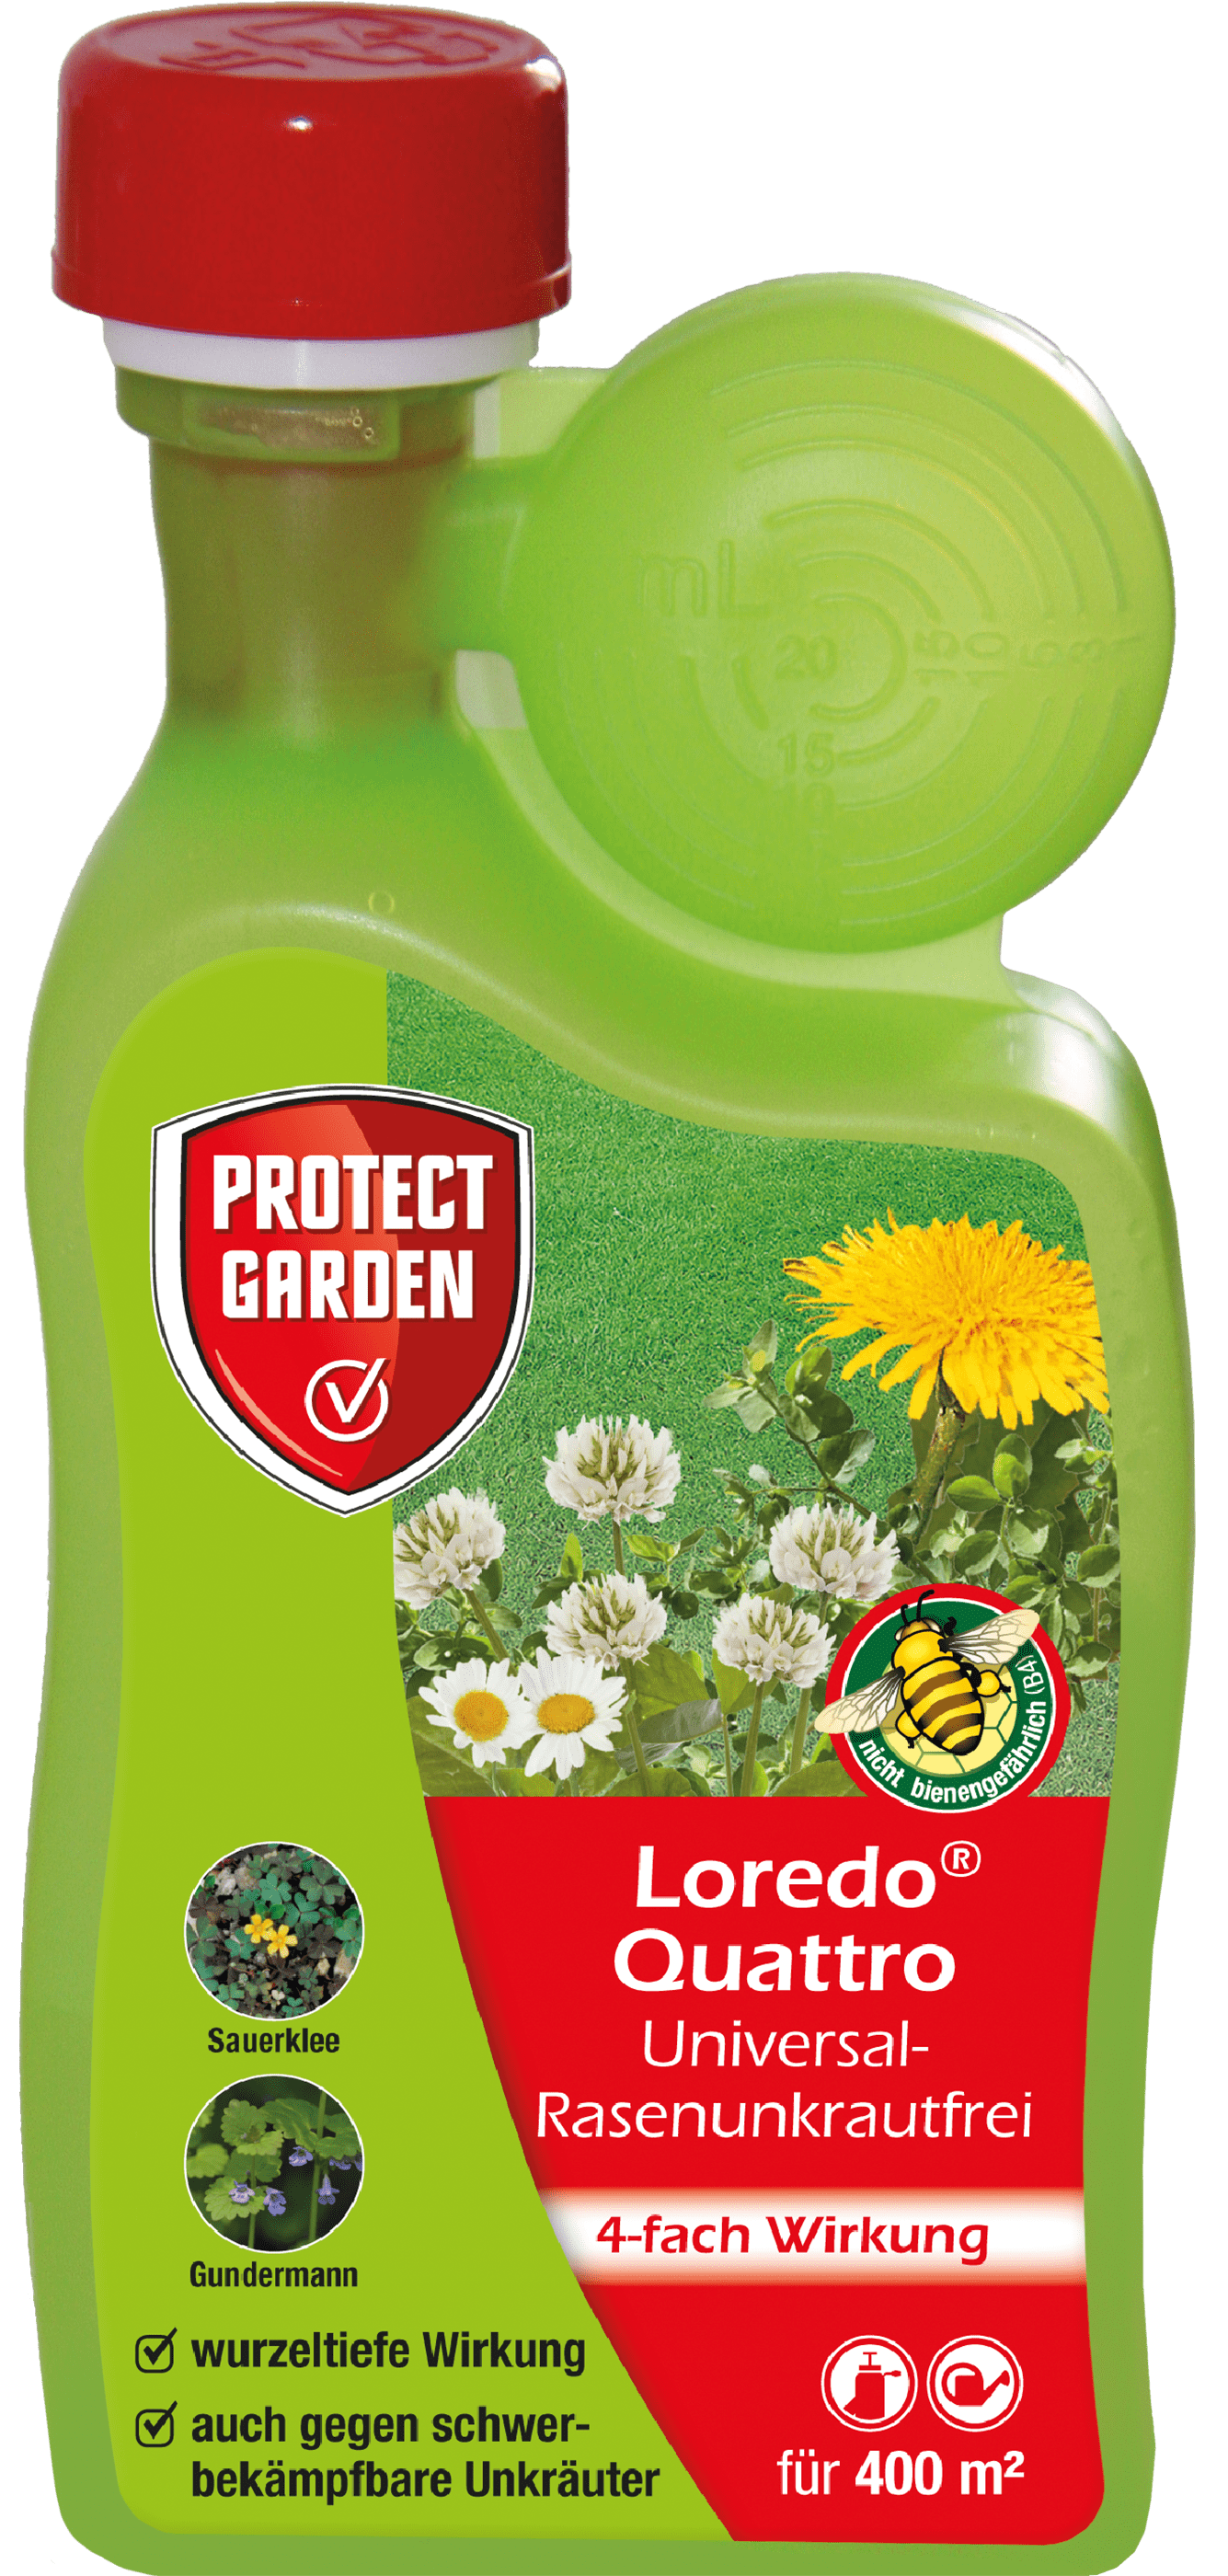 Protect Garden Loredo Quattro Universal-Rasenunkrautfrei für 400 m²